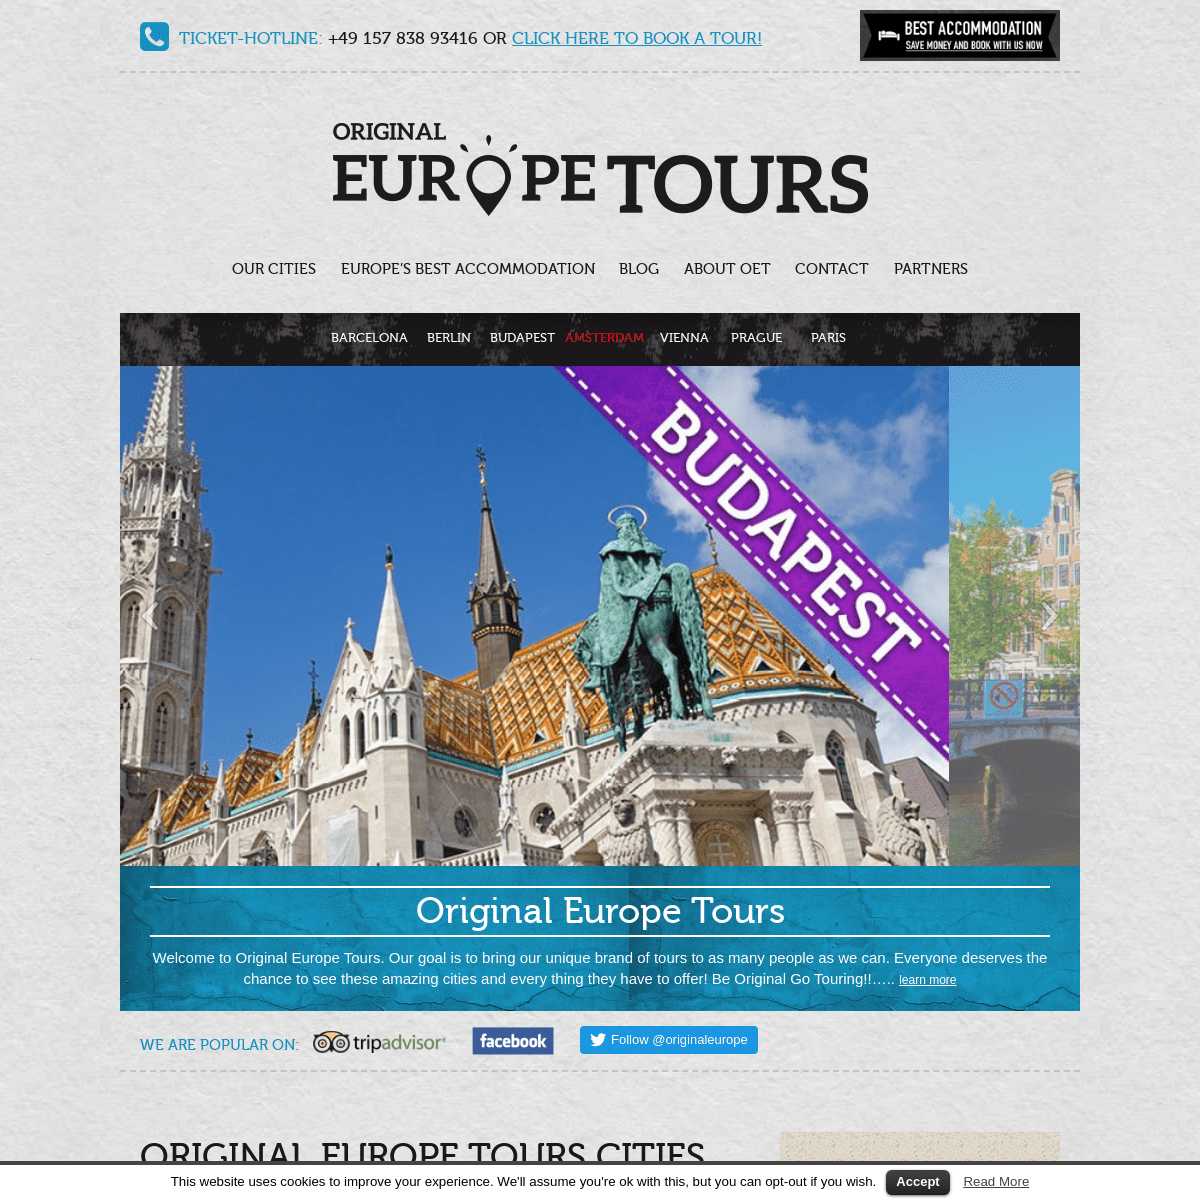 A complete backup of original-europe-tours.com